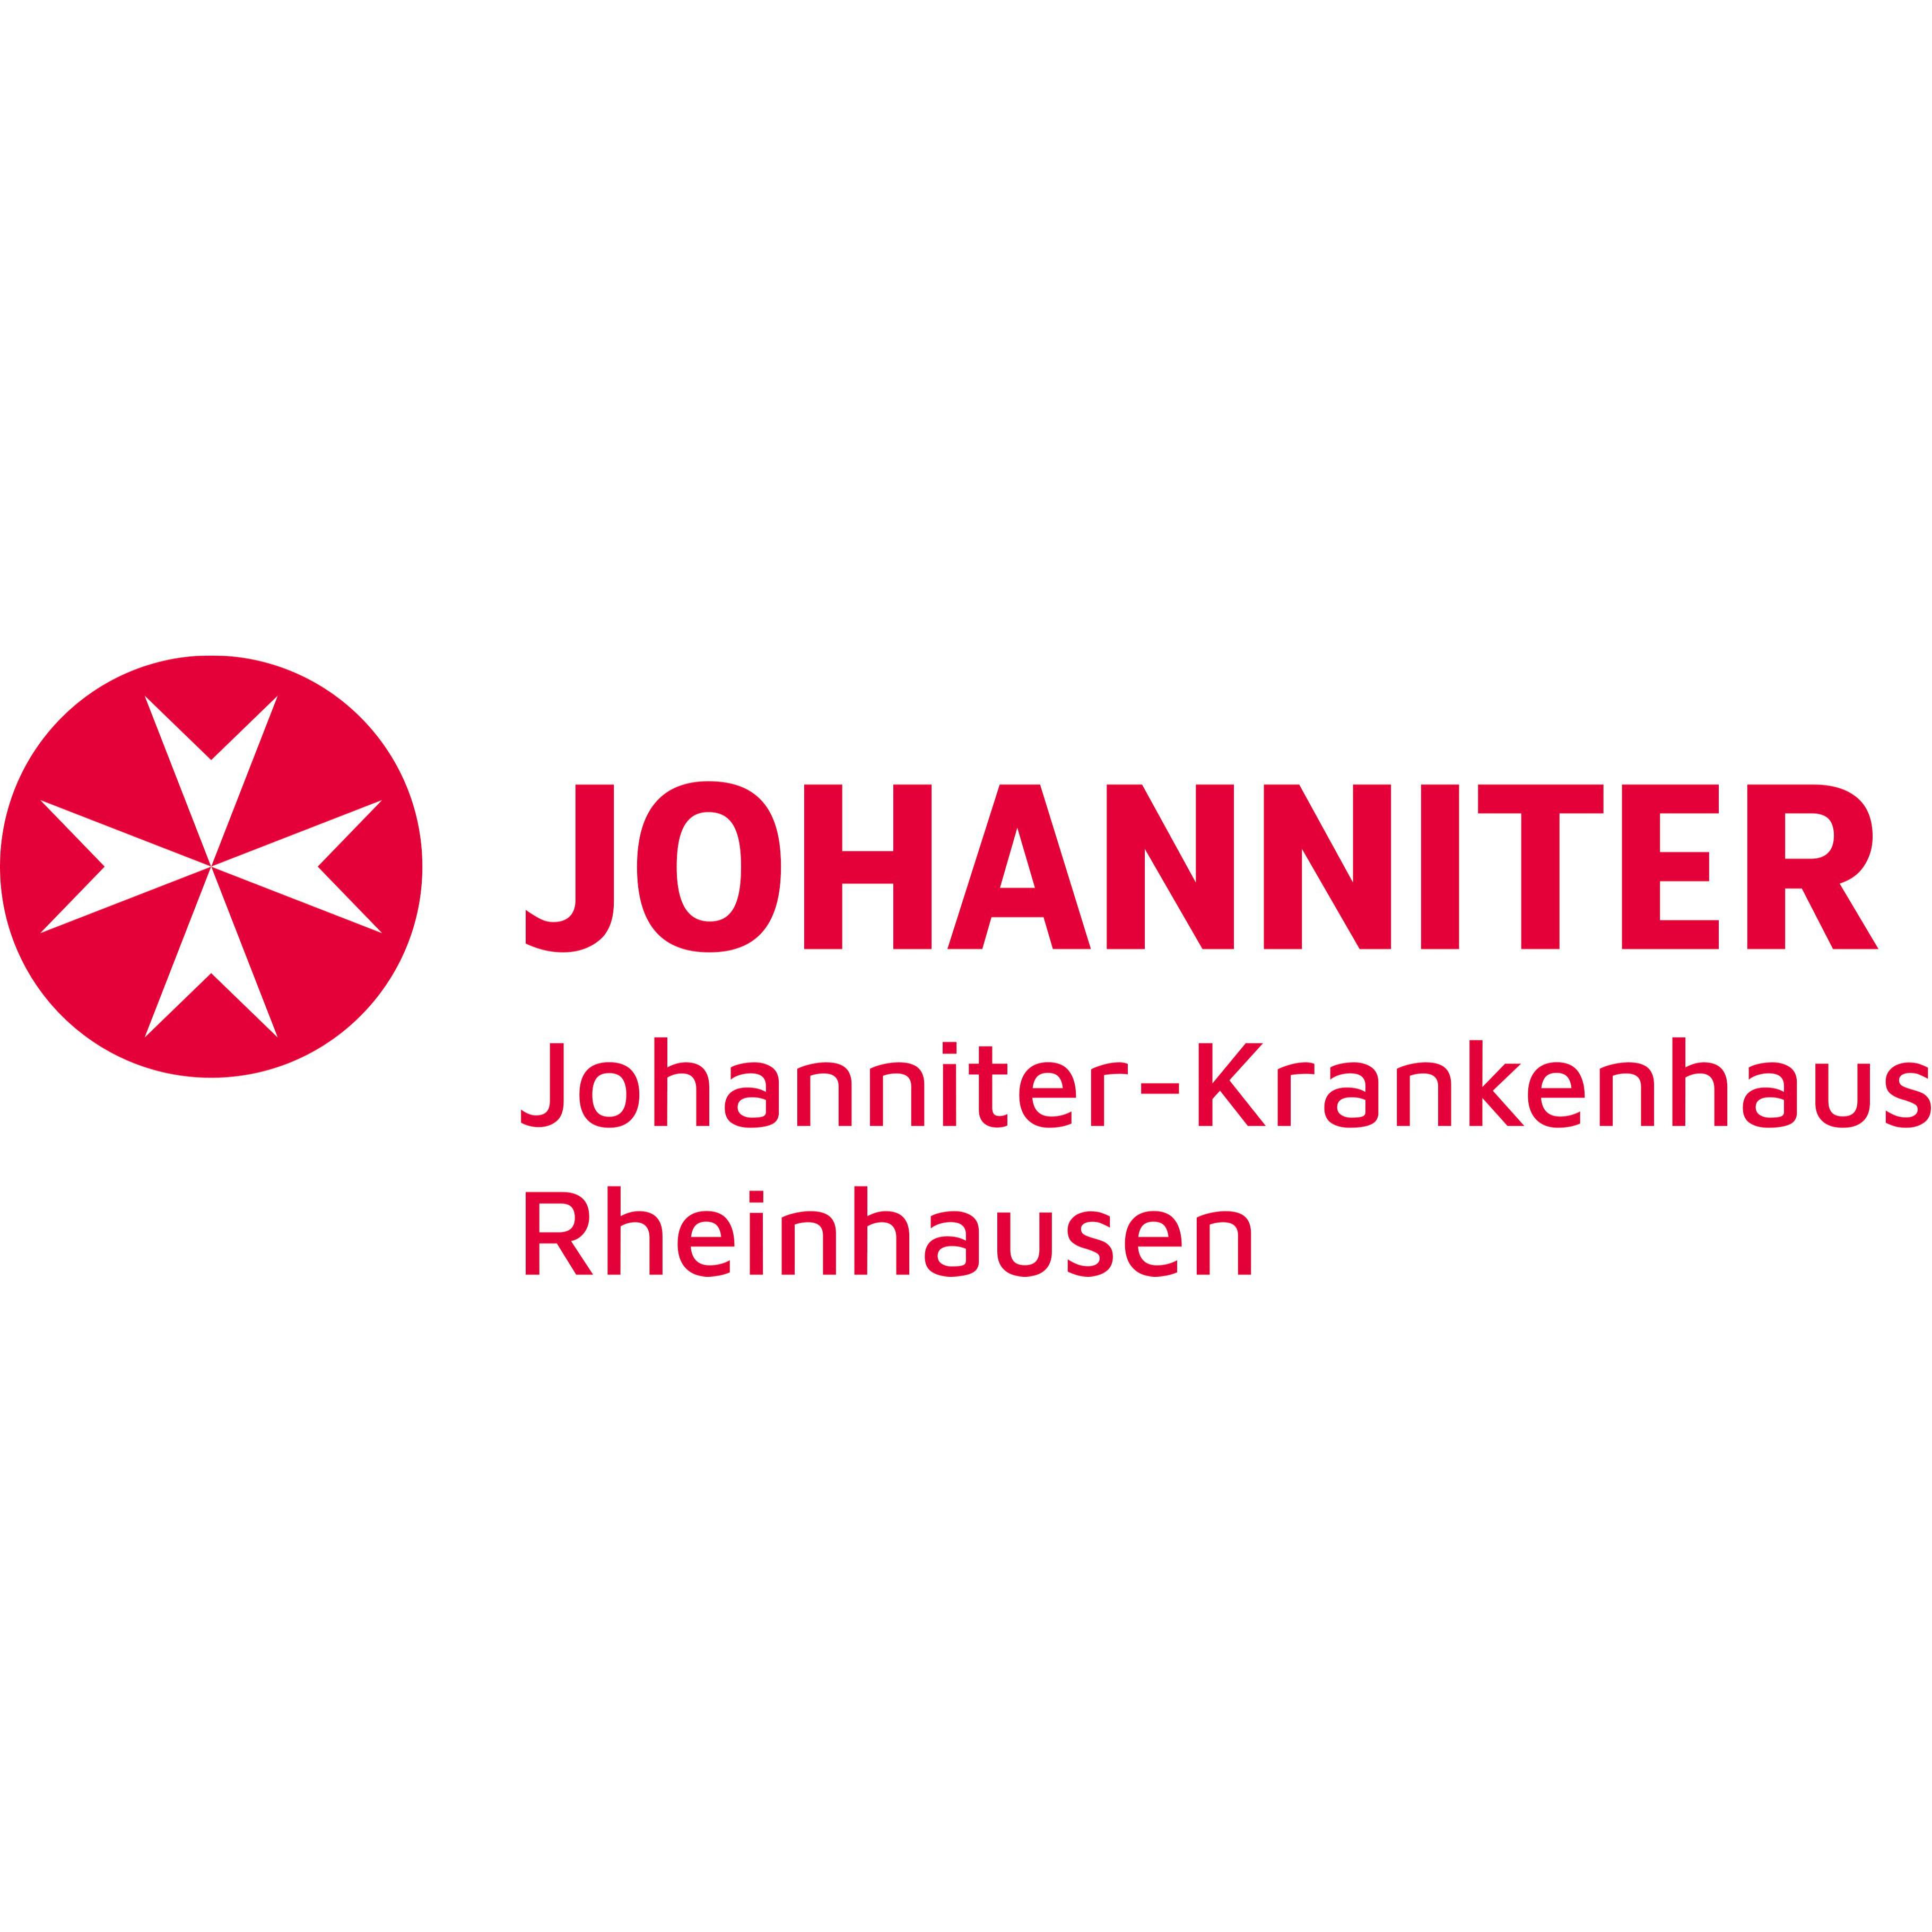 Johanniter-Krankenhaus Duisburg-Rheinhausen  